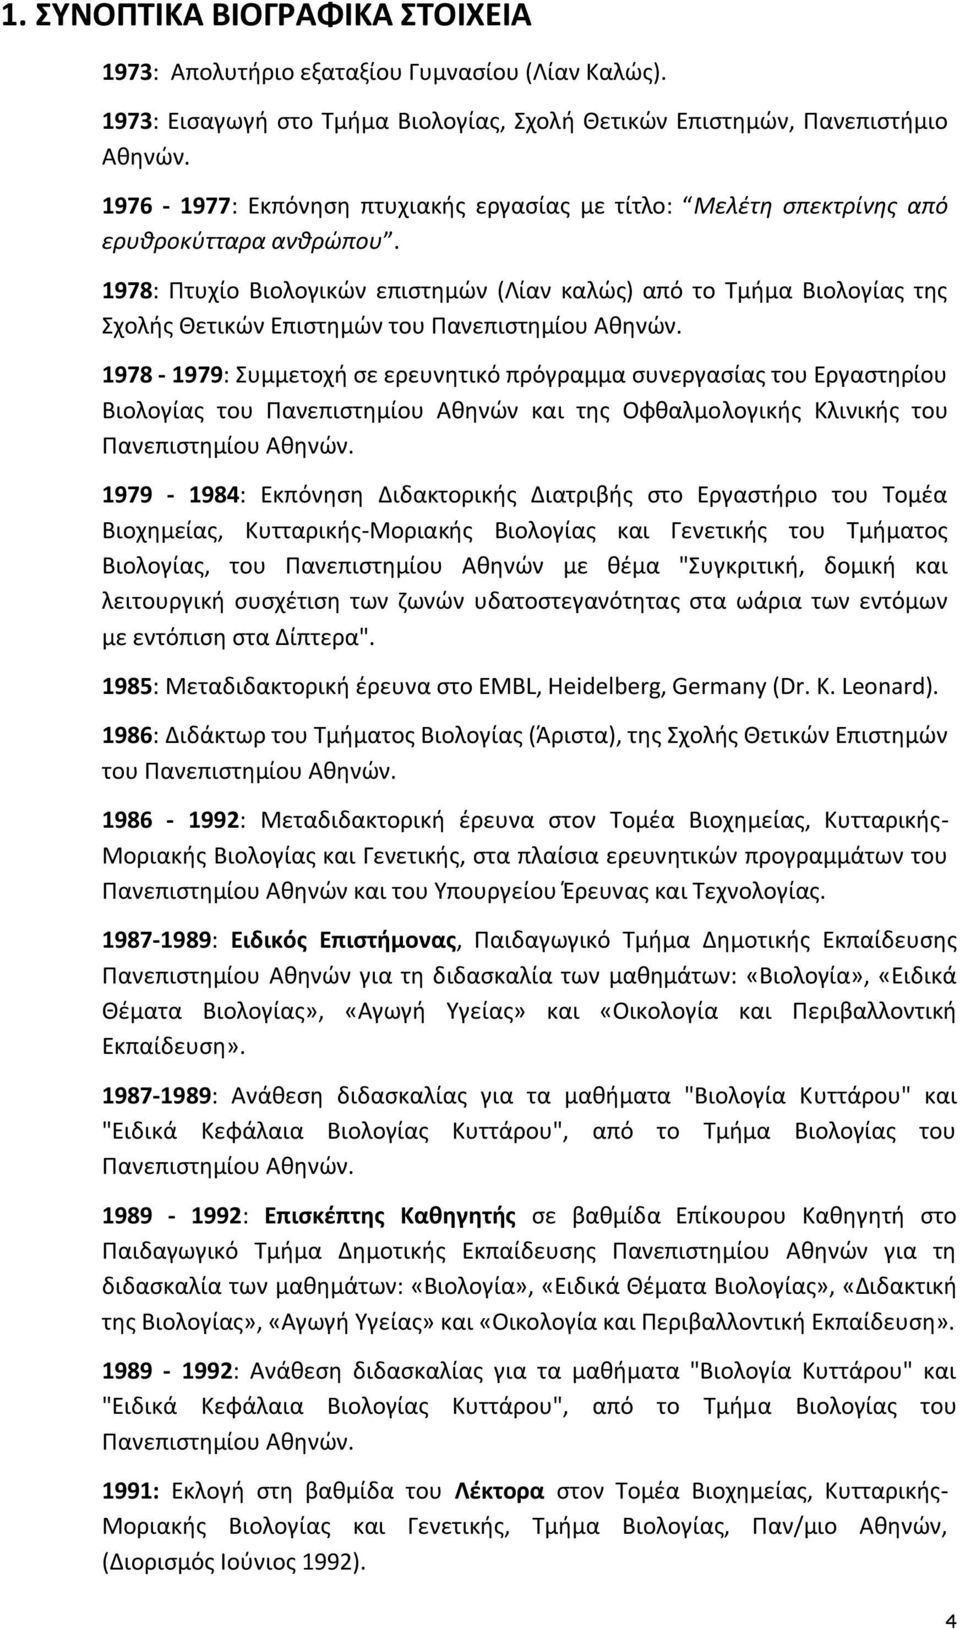 1978: Πτυχίο Βιολογικών επιστημών (Λίαν καλώς) από το Τμήμα Βιολογίας της Σχολής Θετικών Επιστημών του Πανεπιστημίου Αθηνών.